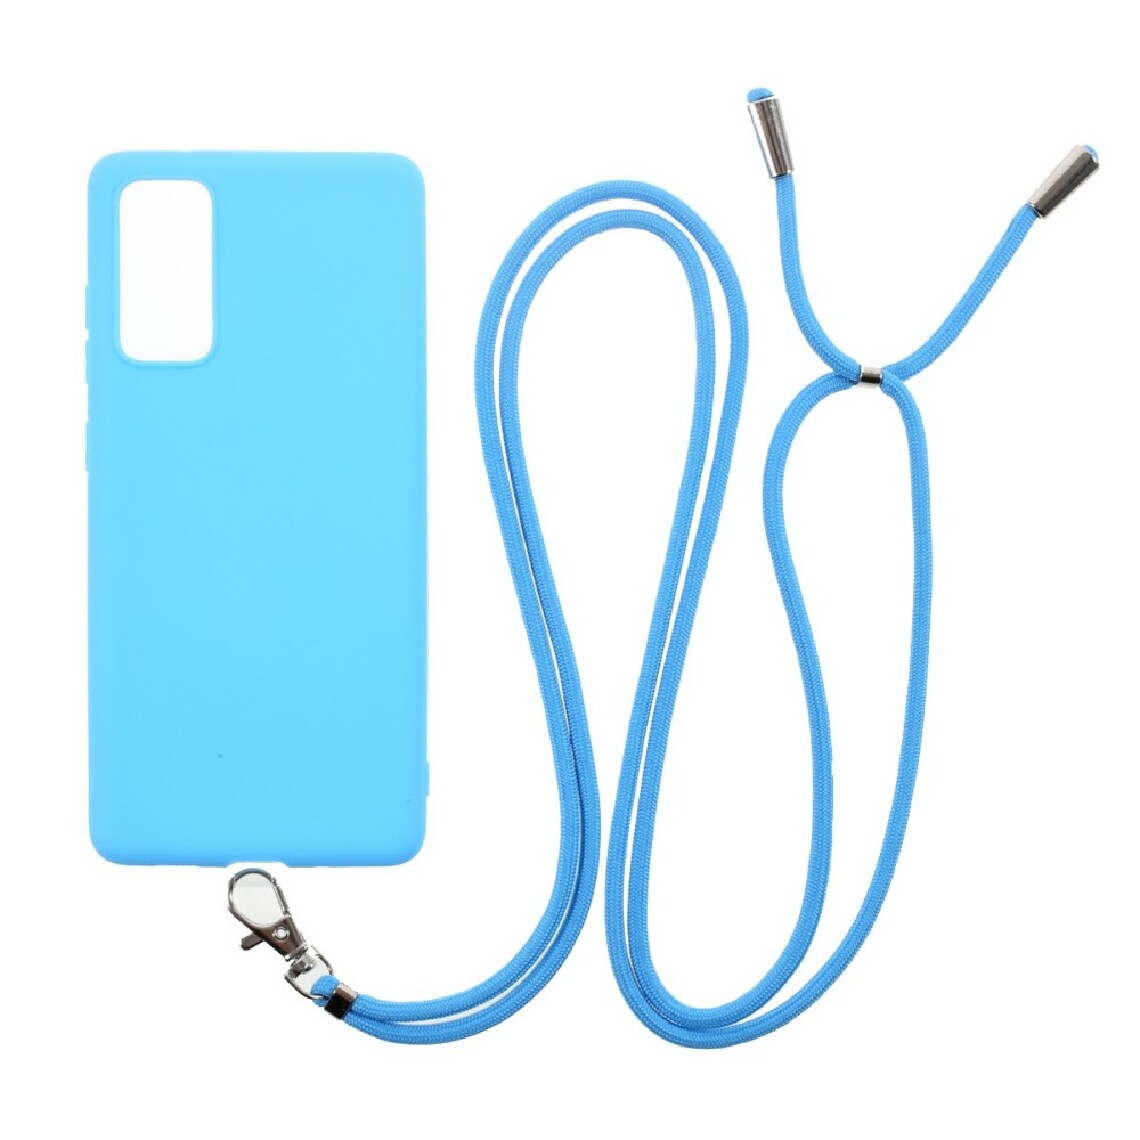 Other - Coque en TPU bonbon de couleur unie avec cordon bleu ciel pour votre Samsung Galaxy S20 FE/S20 FE 5G - Coque, étui smartphone